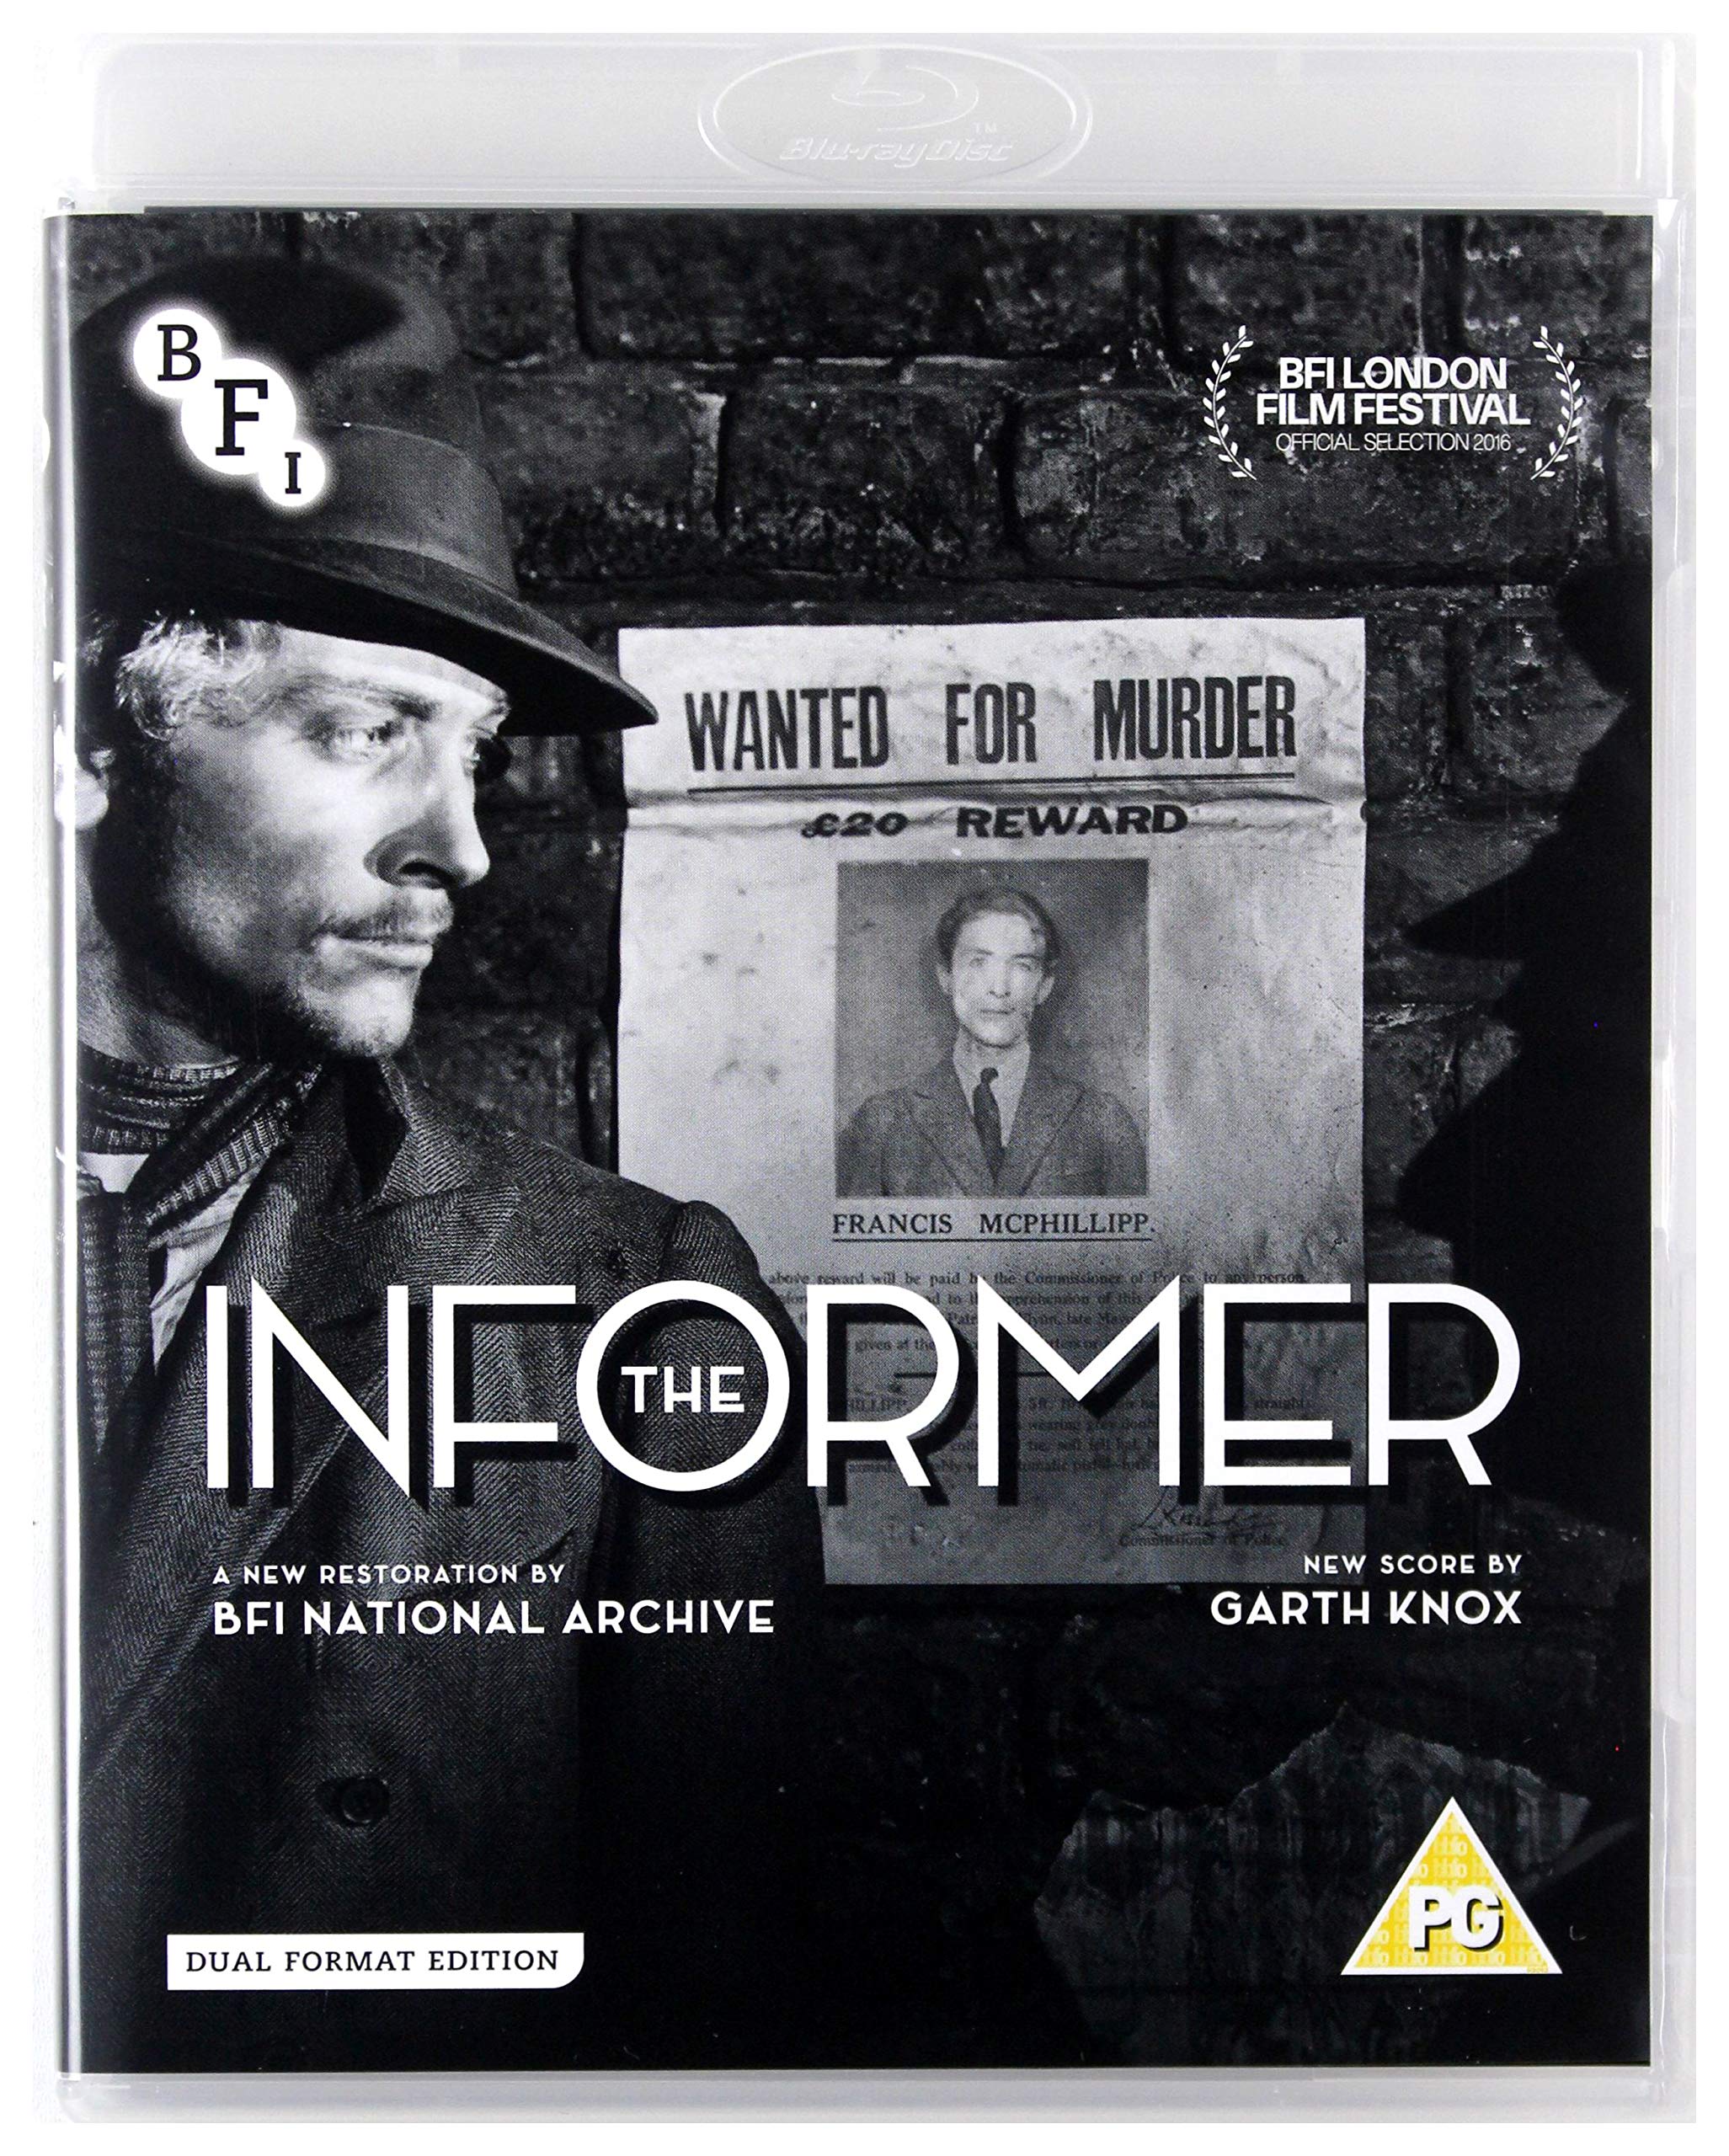 The Informer (DVD + Blu-ray)